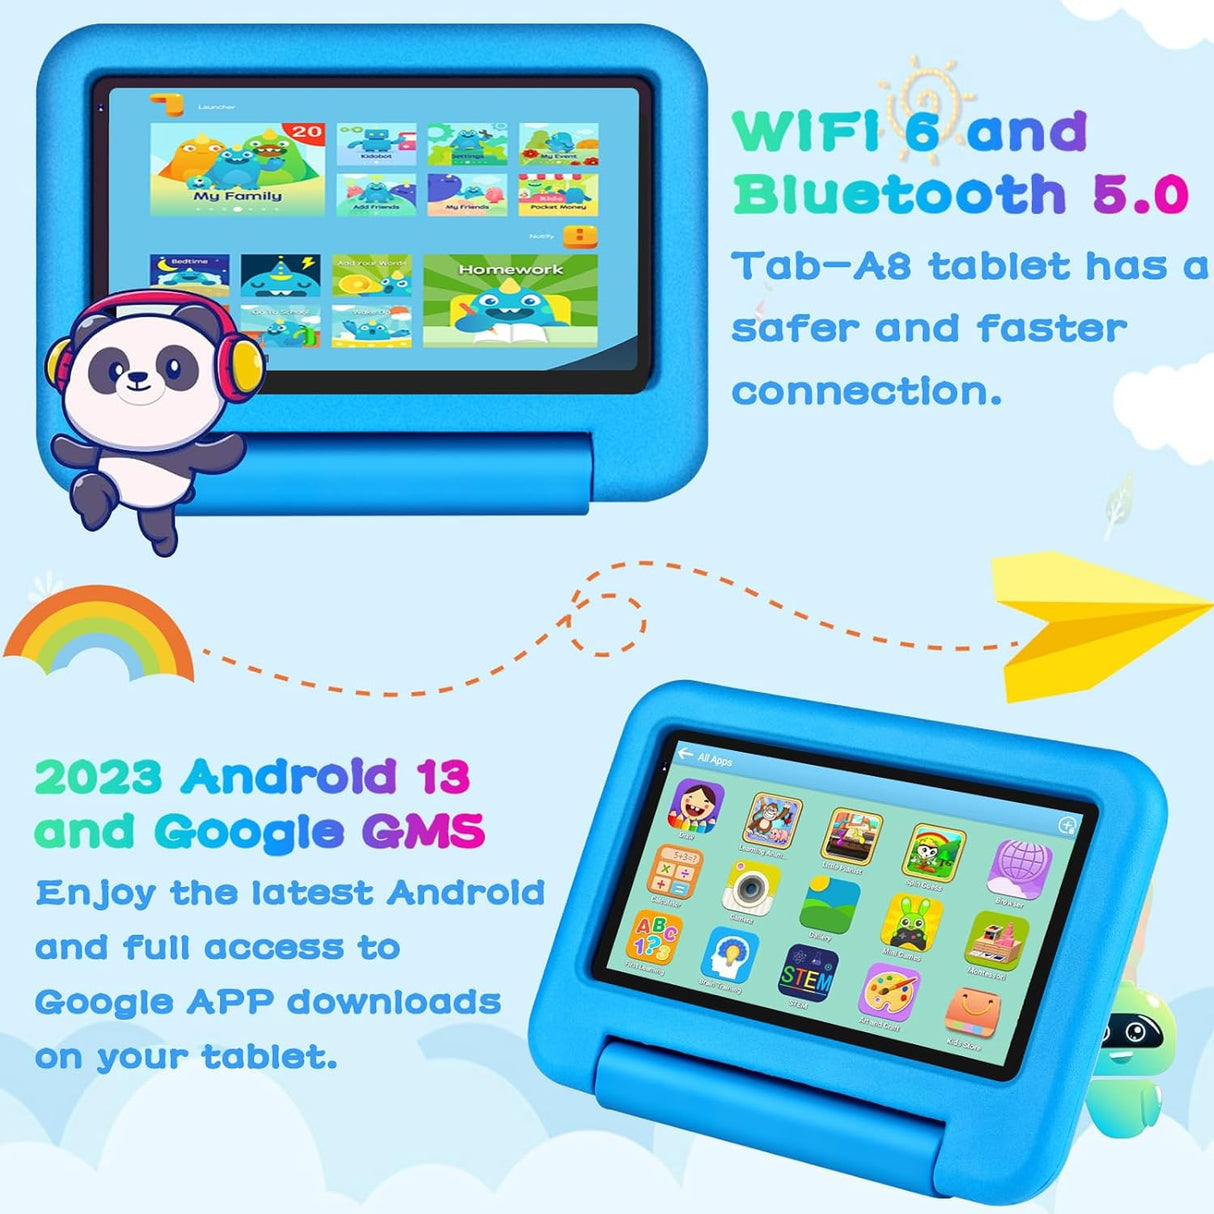 Tablet 7" para crianças 7GB/64GB Kids